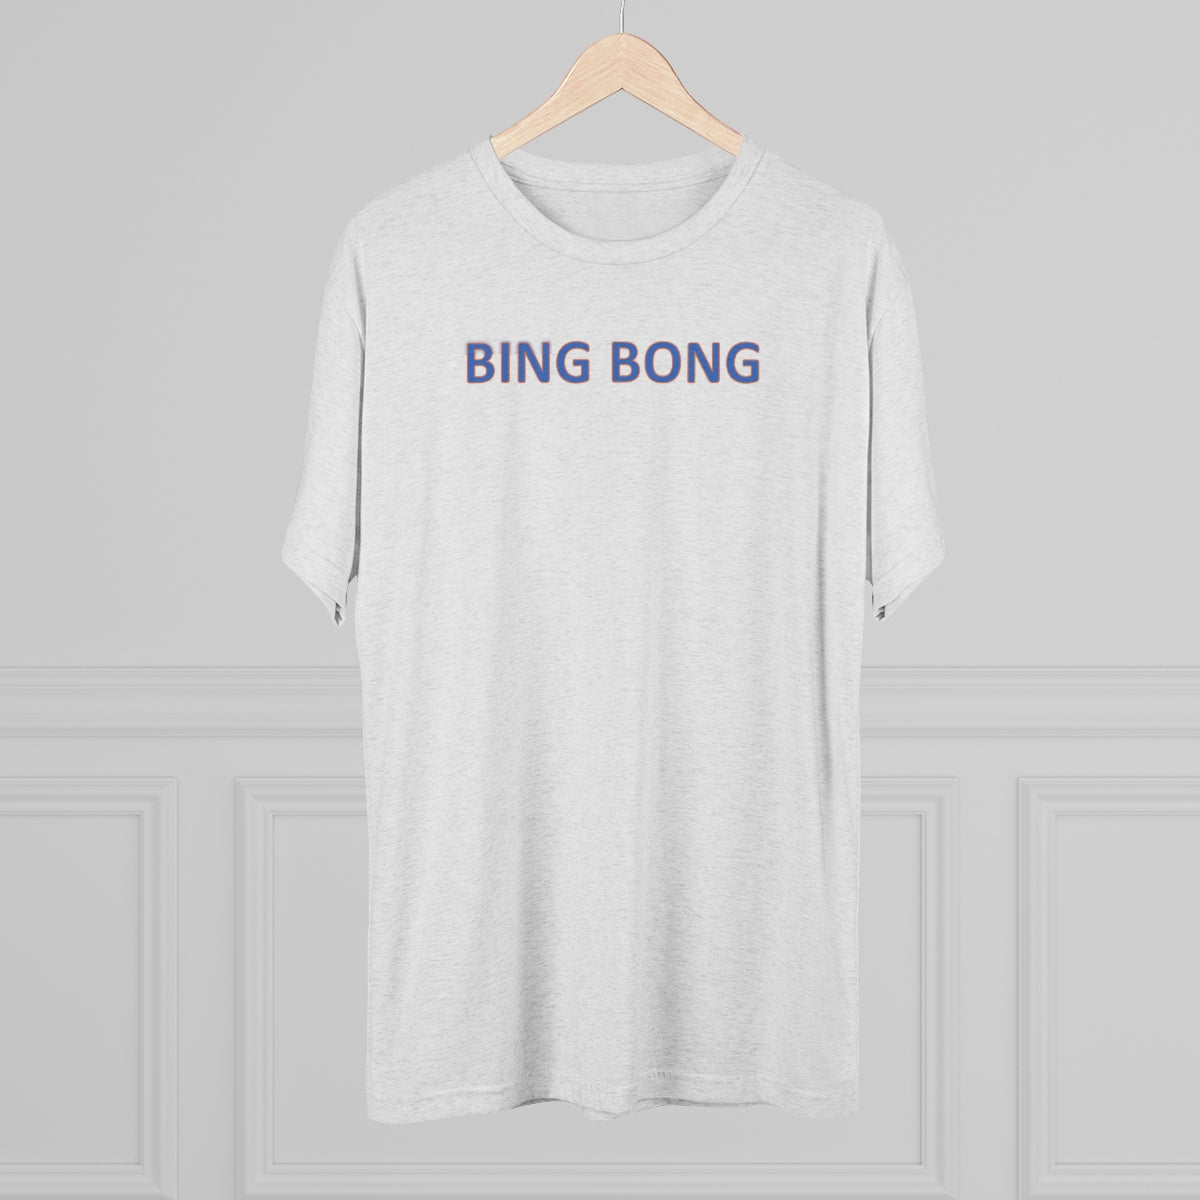 Bing Bong T-Shirt - IsGoodBrand